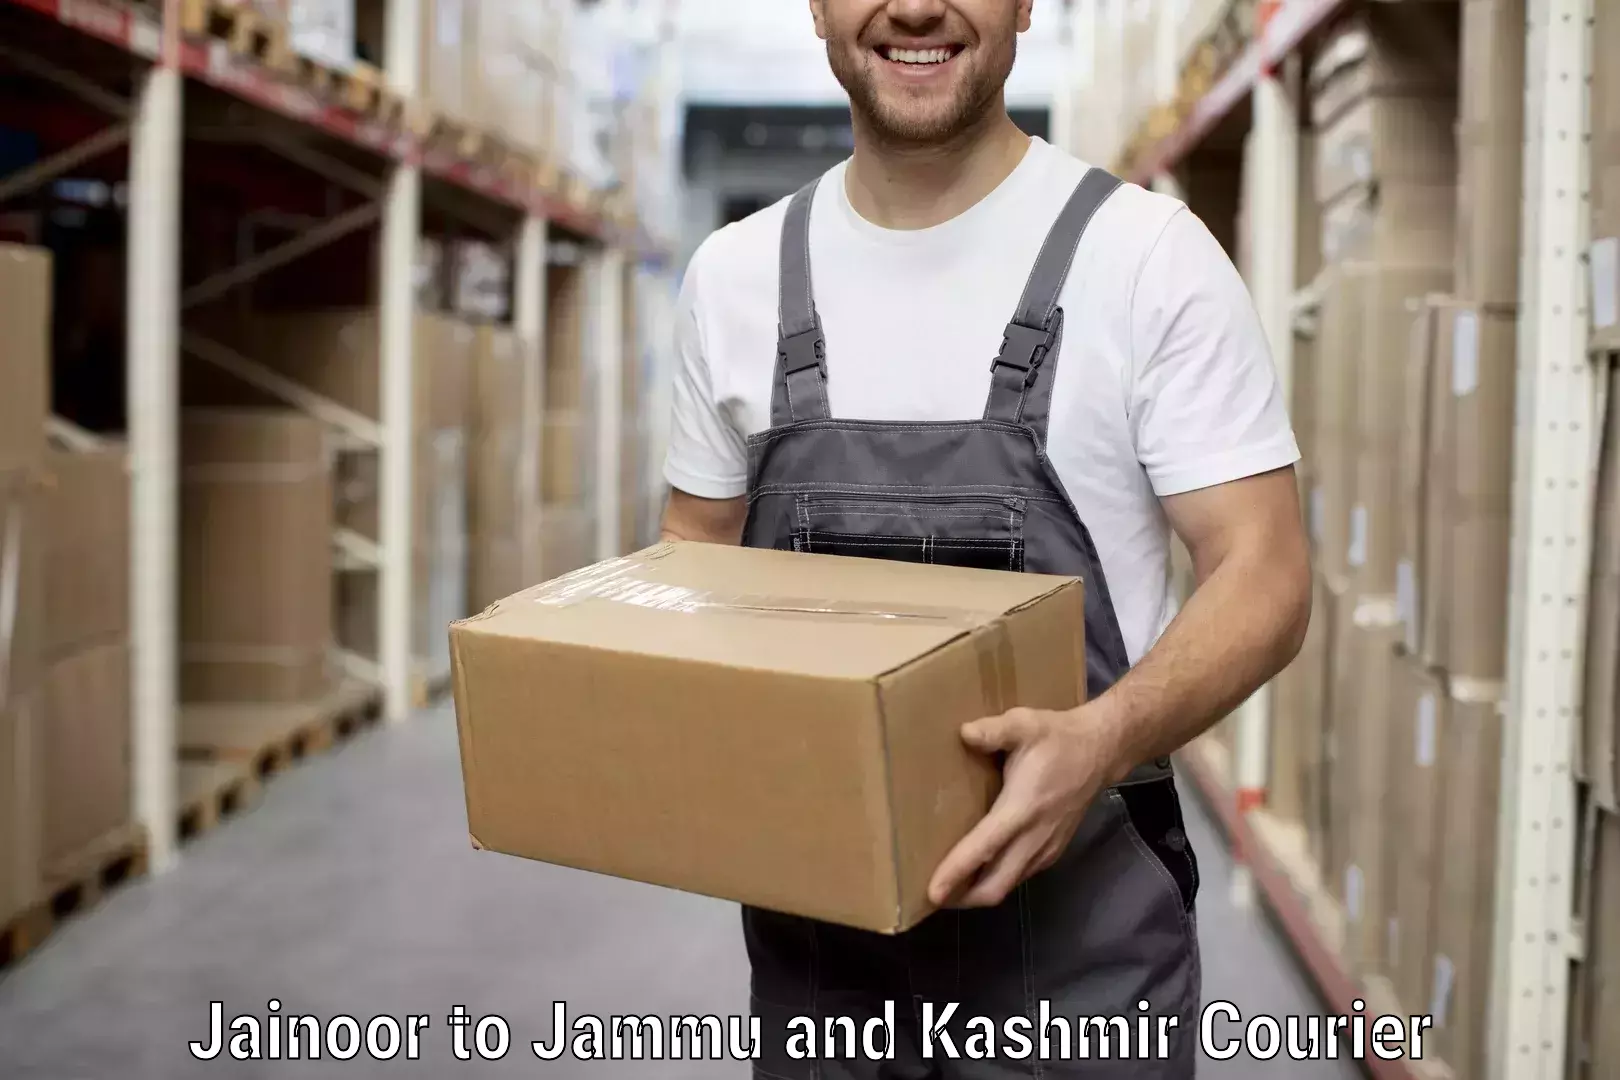 Home goods moving company Jainoor to Sunderbani